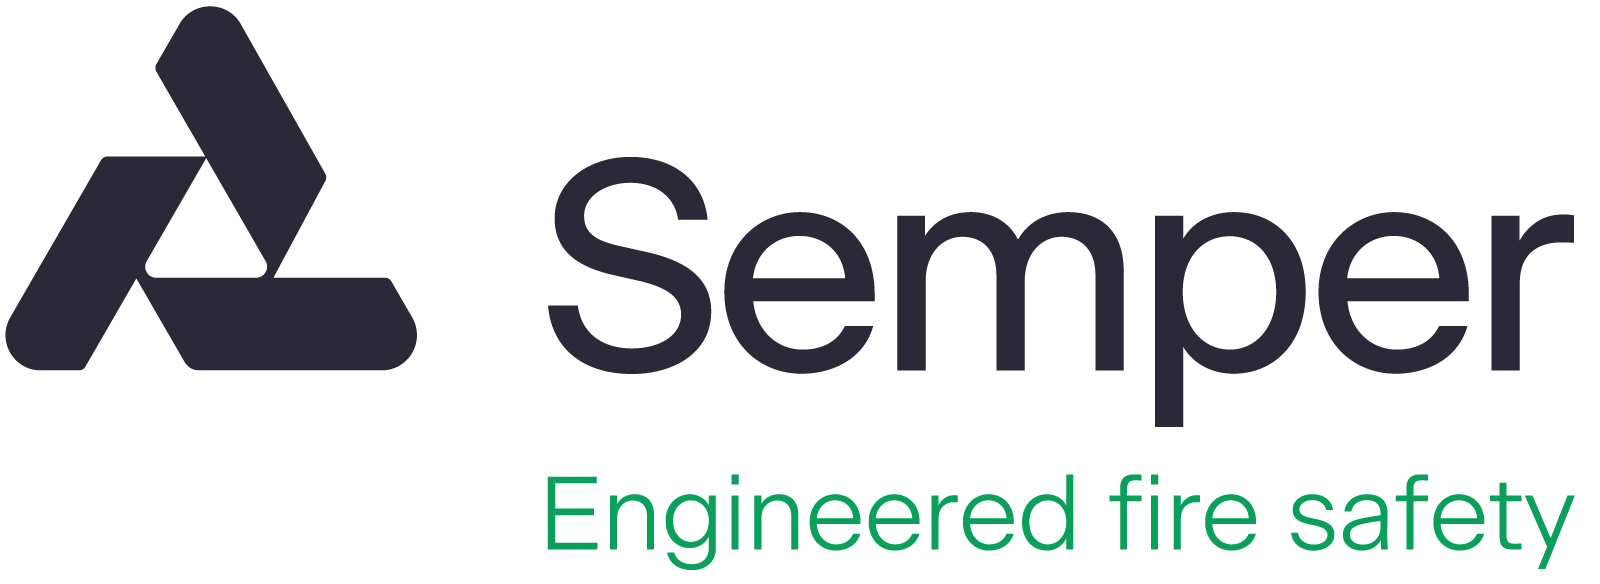 Semper - Engineered fire safety